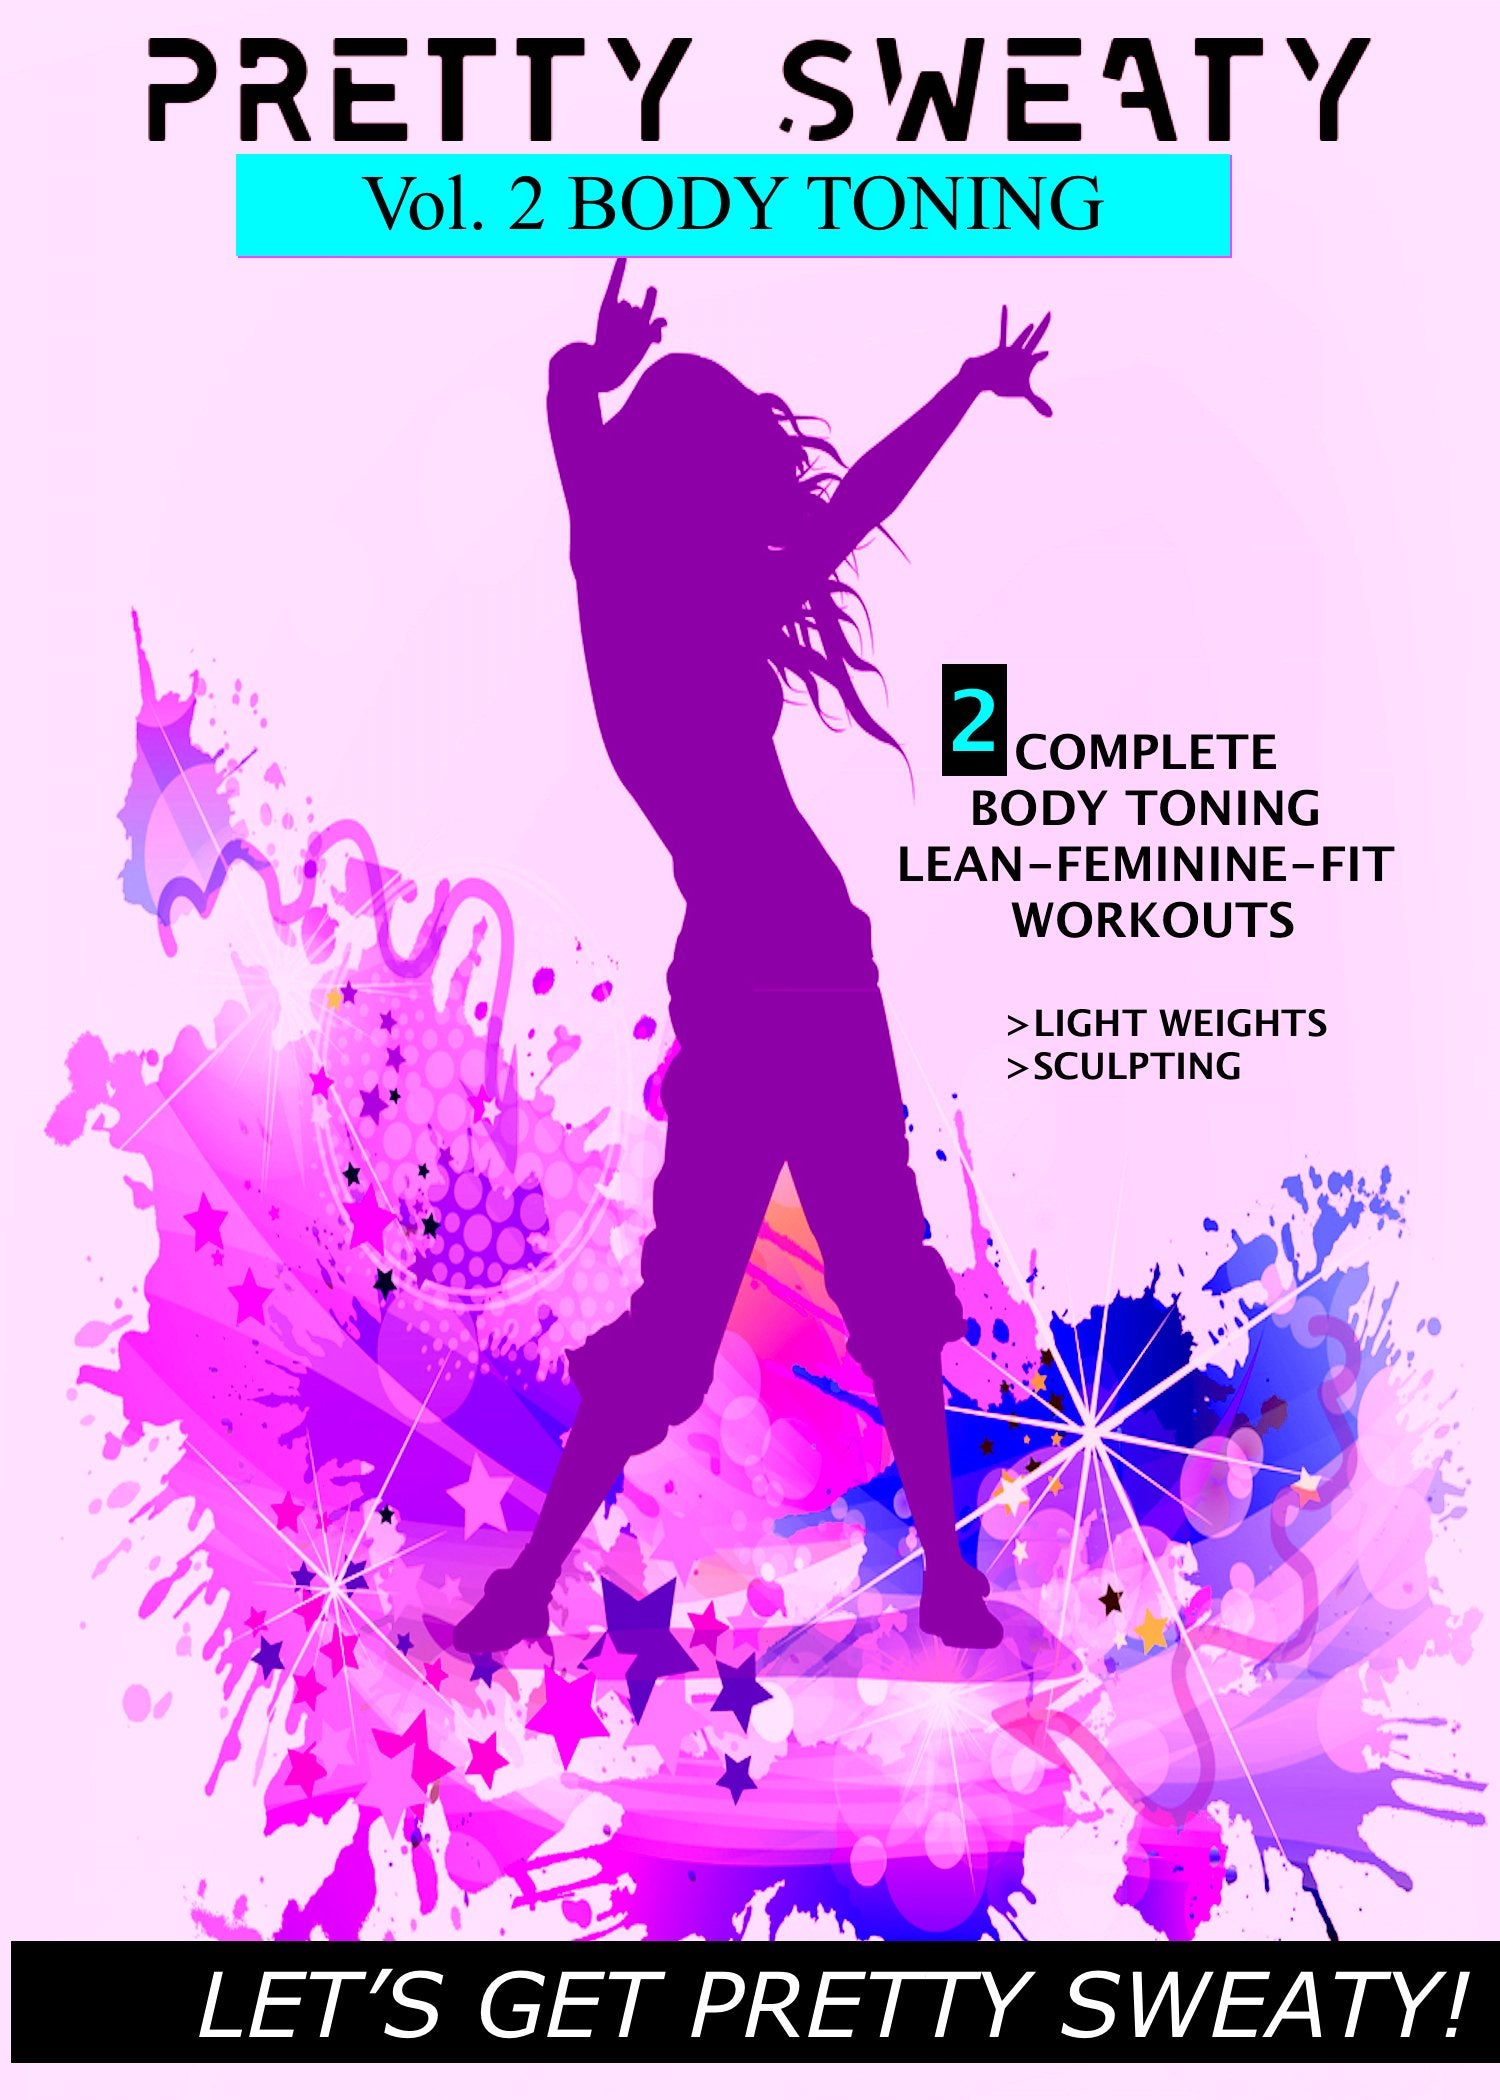 DVD - Total Body Toning